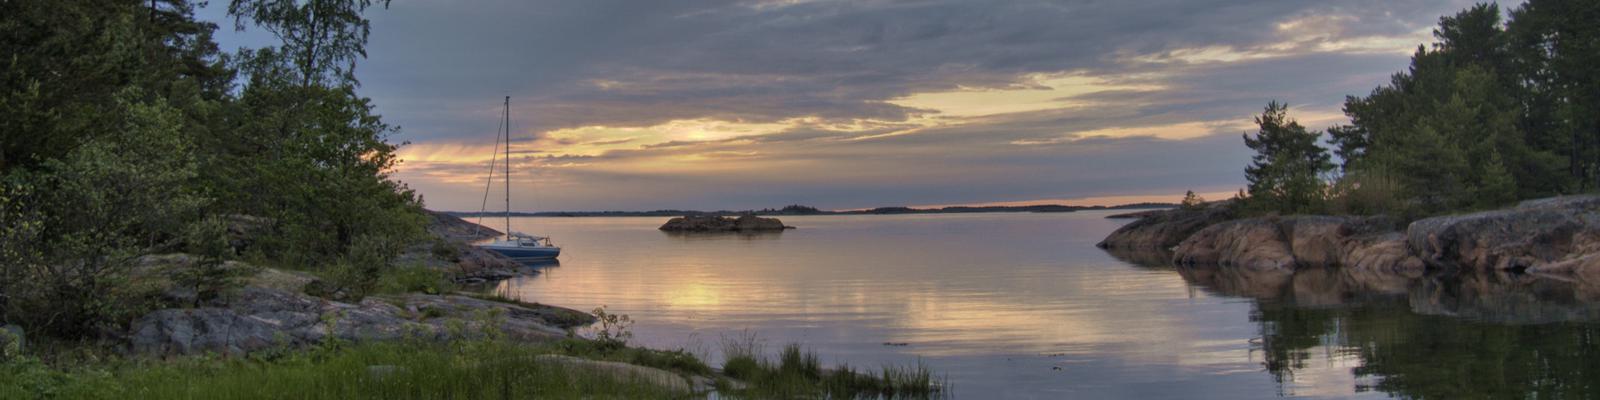 Östersjön lugn havsvik och en segelbåt.